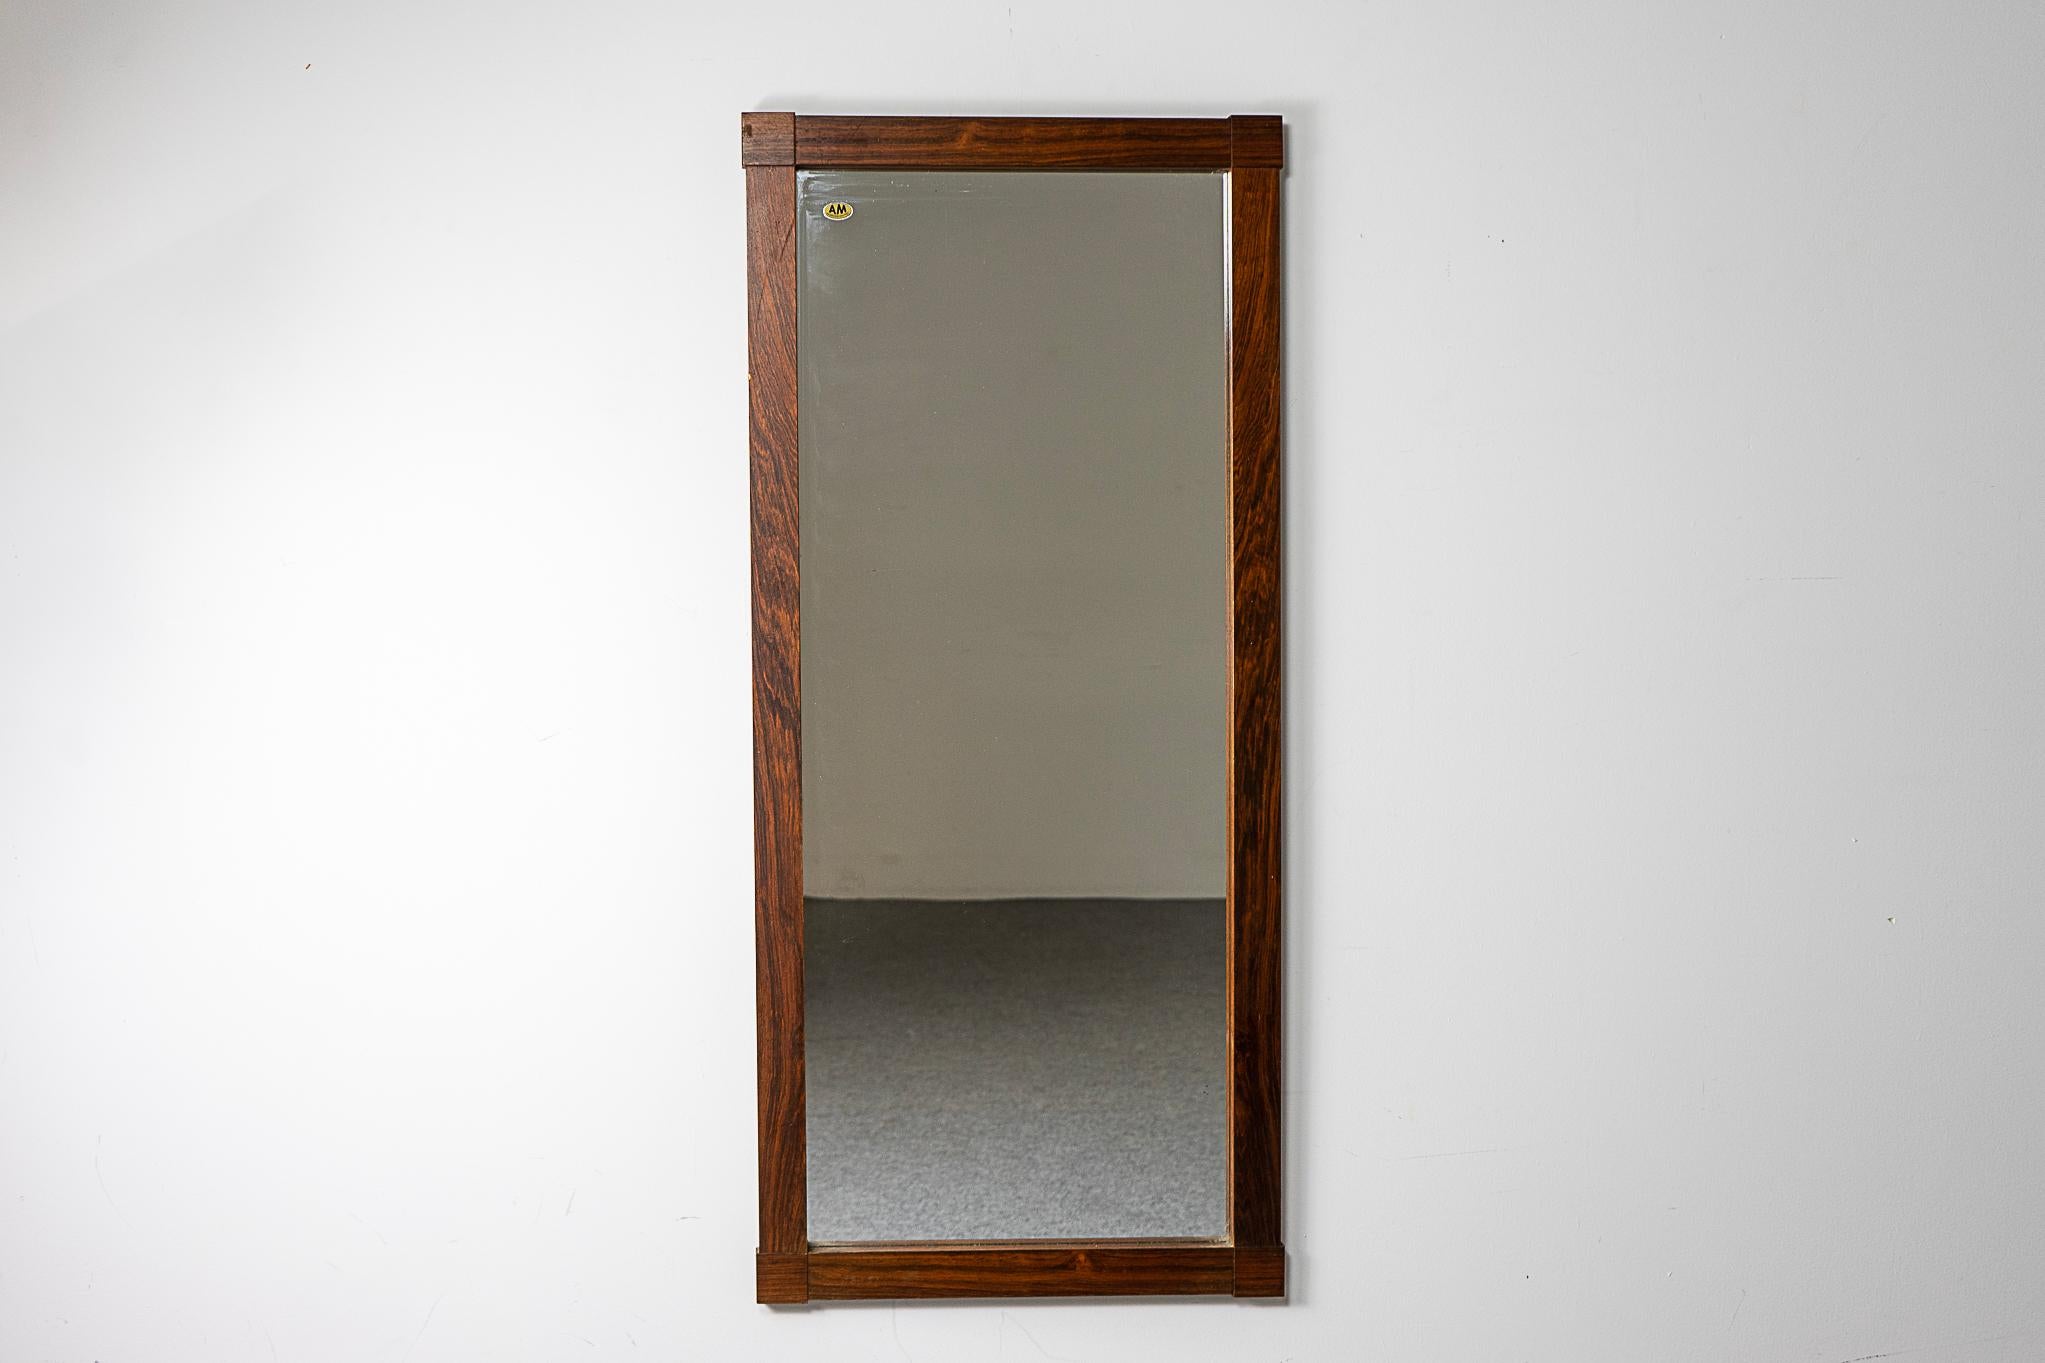 Dänischer Spiegel aus Palisanderholz, ca. 1960er Jahre. Schlankes Design mit einzigartigen Ecken. Perfekte Maße zum Aufhängen in der Nähe der Tür, um sich vor dem Ausgehen zu kontrollieren.

Bitte erkundigen Sie sich nach den internationalen